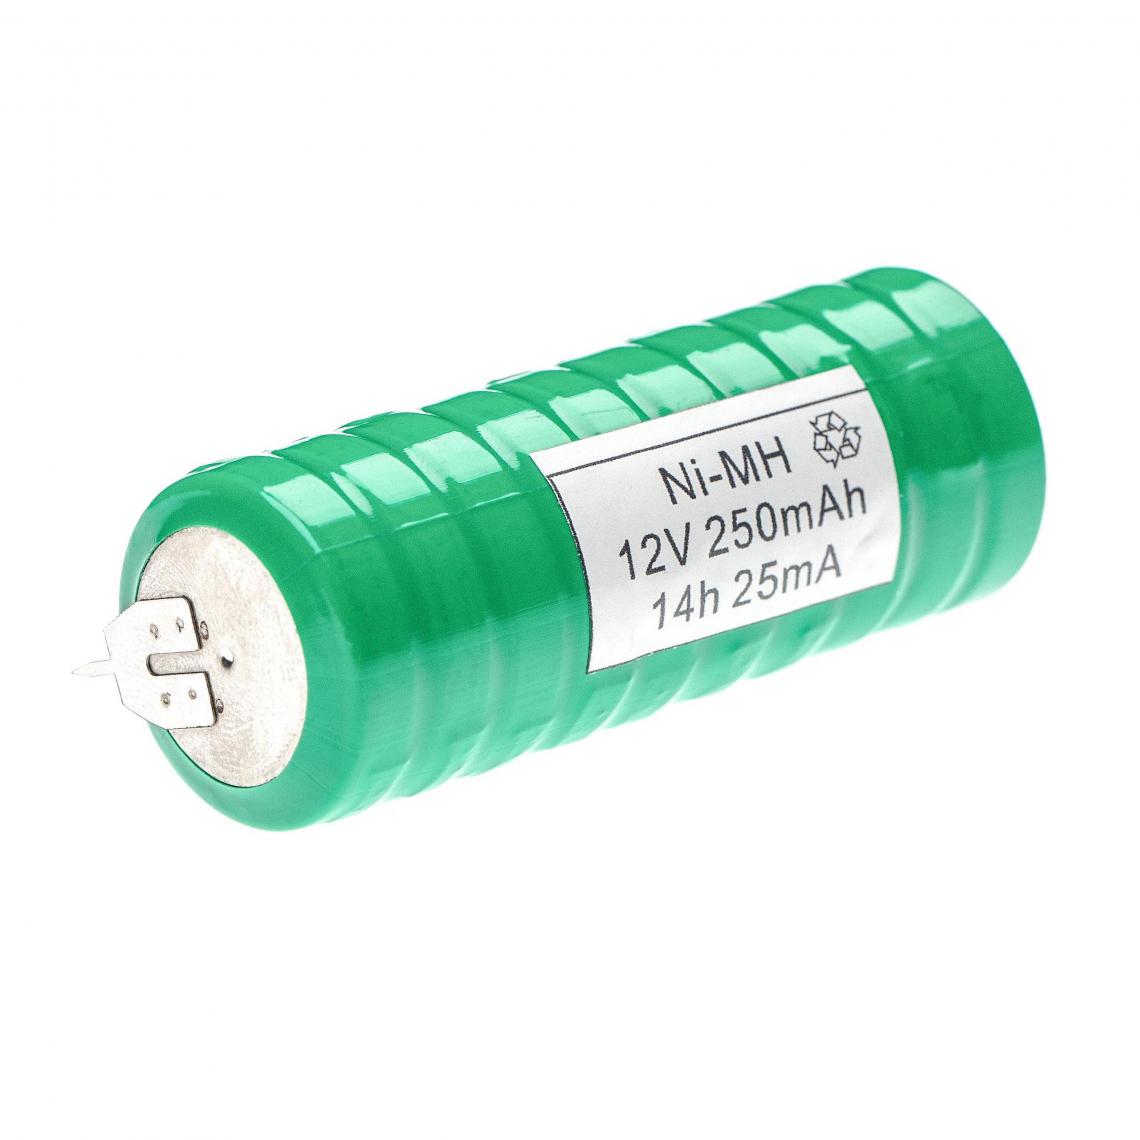 Vhbw - vhbw NiMH pile bouton de remplacement pour type V250H 250mAh 12V convient pour les batteries de modélisme etc. - Autre appareil de mesure